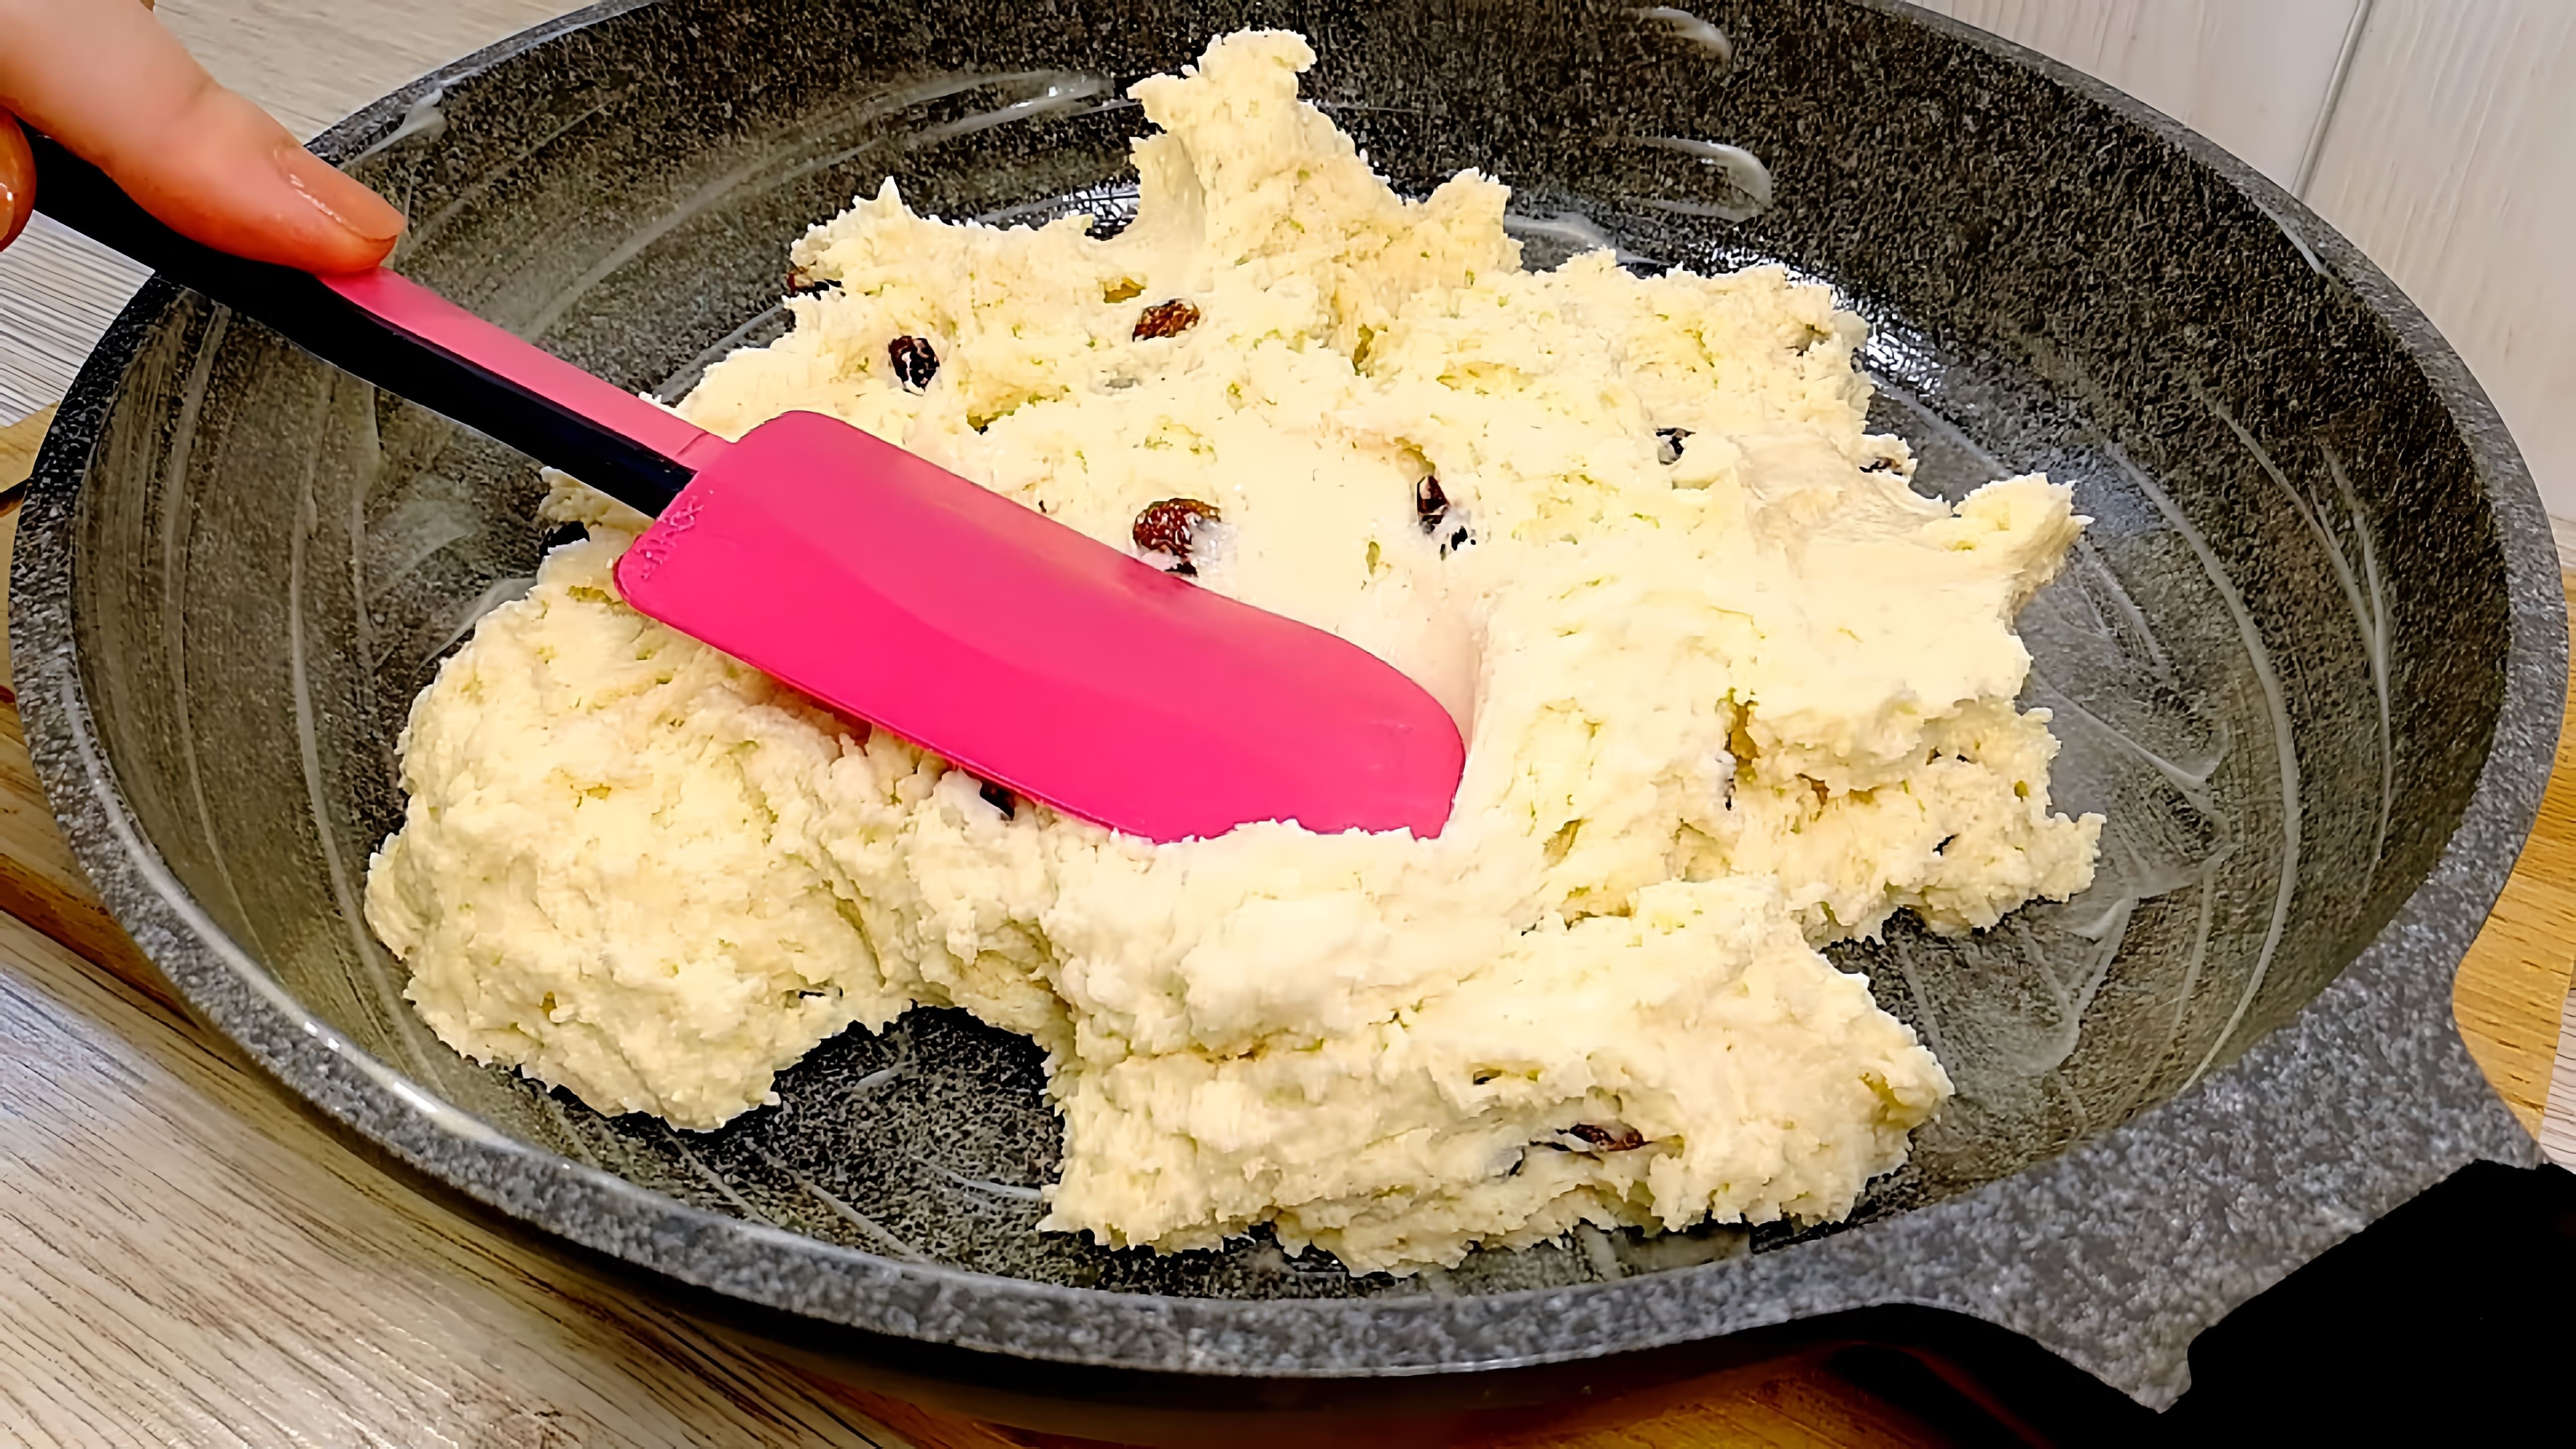 В этом видео демонстрируется рецепт приготовления мягкого, воздушного творожного пирога на сковороде